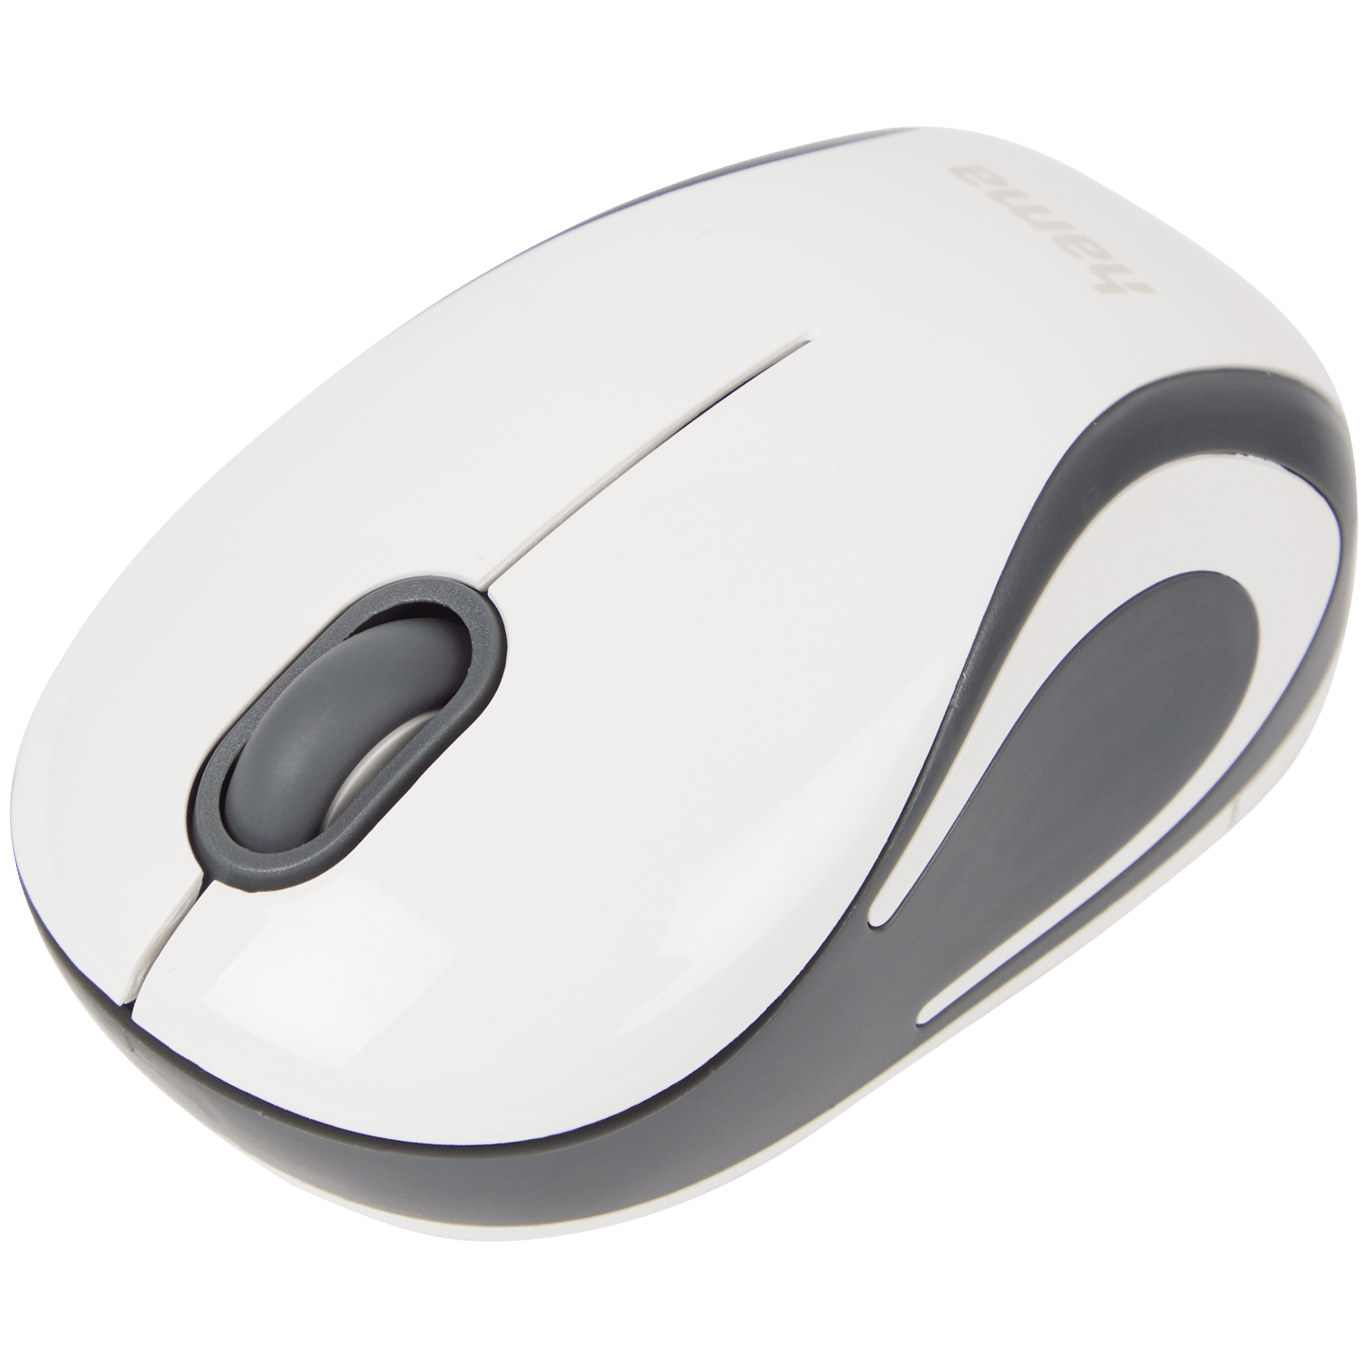 Optická mini myš Hama